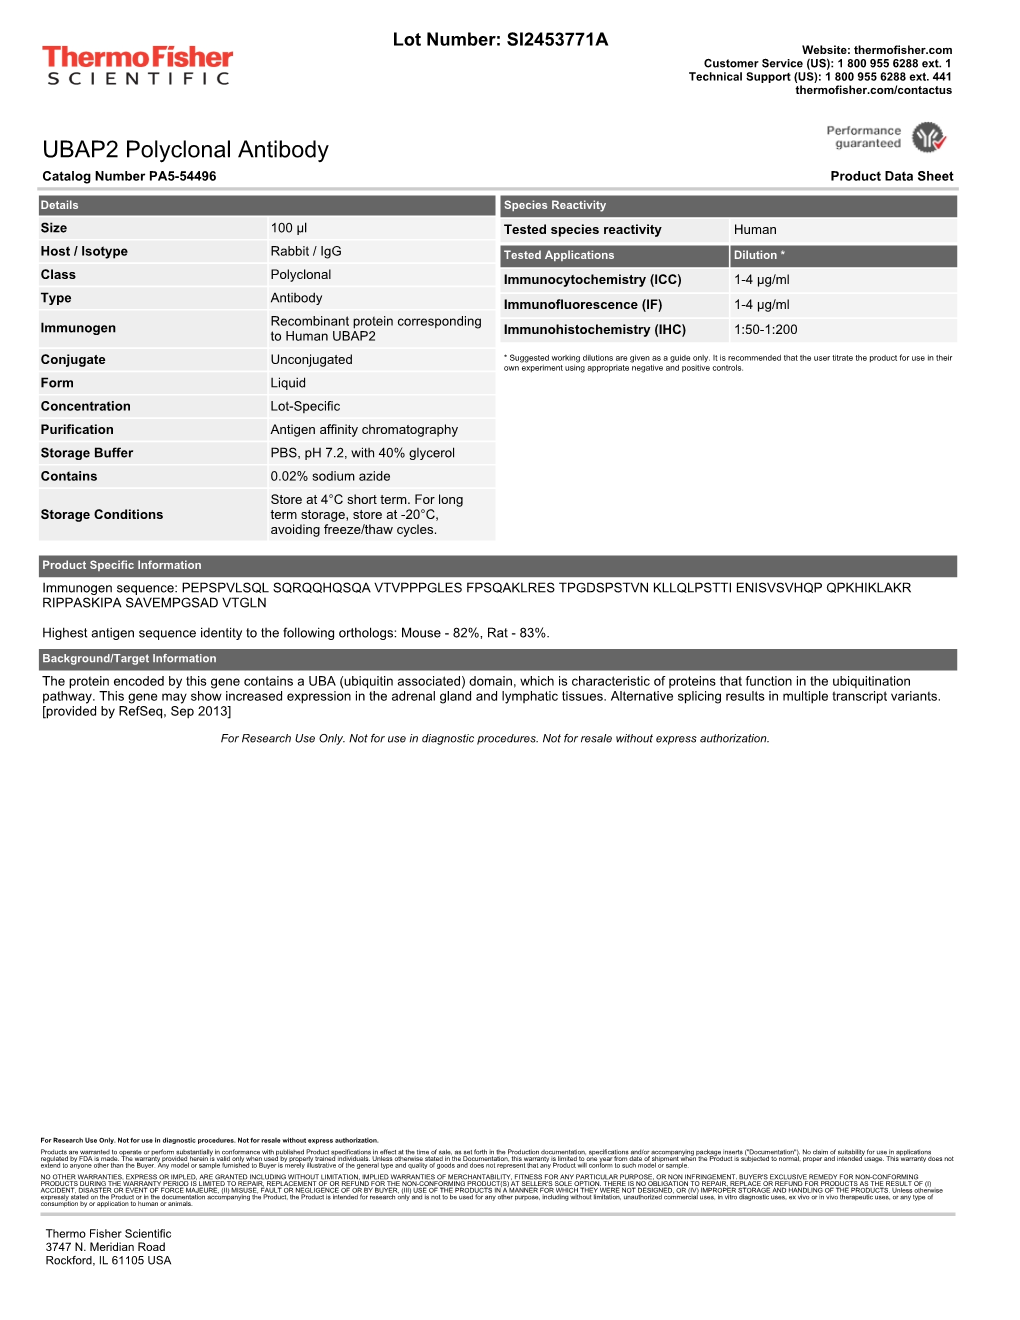 UBAP2 Polyclonal Antibody Catalog Number PA5-54496 Product Data Sheet